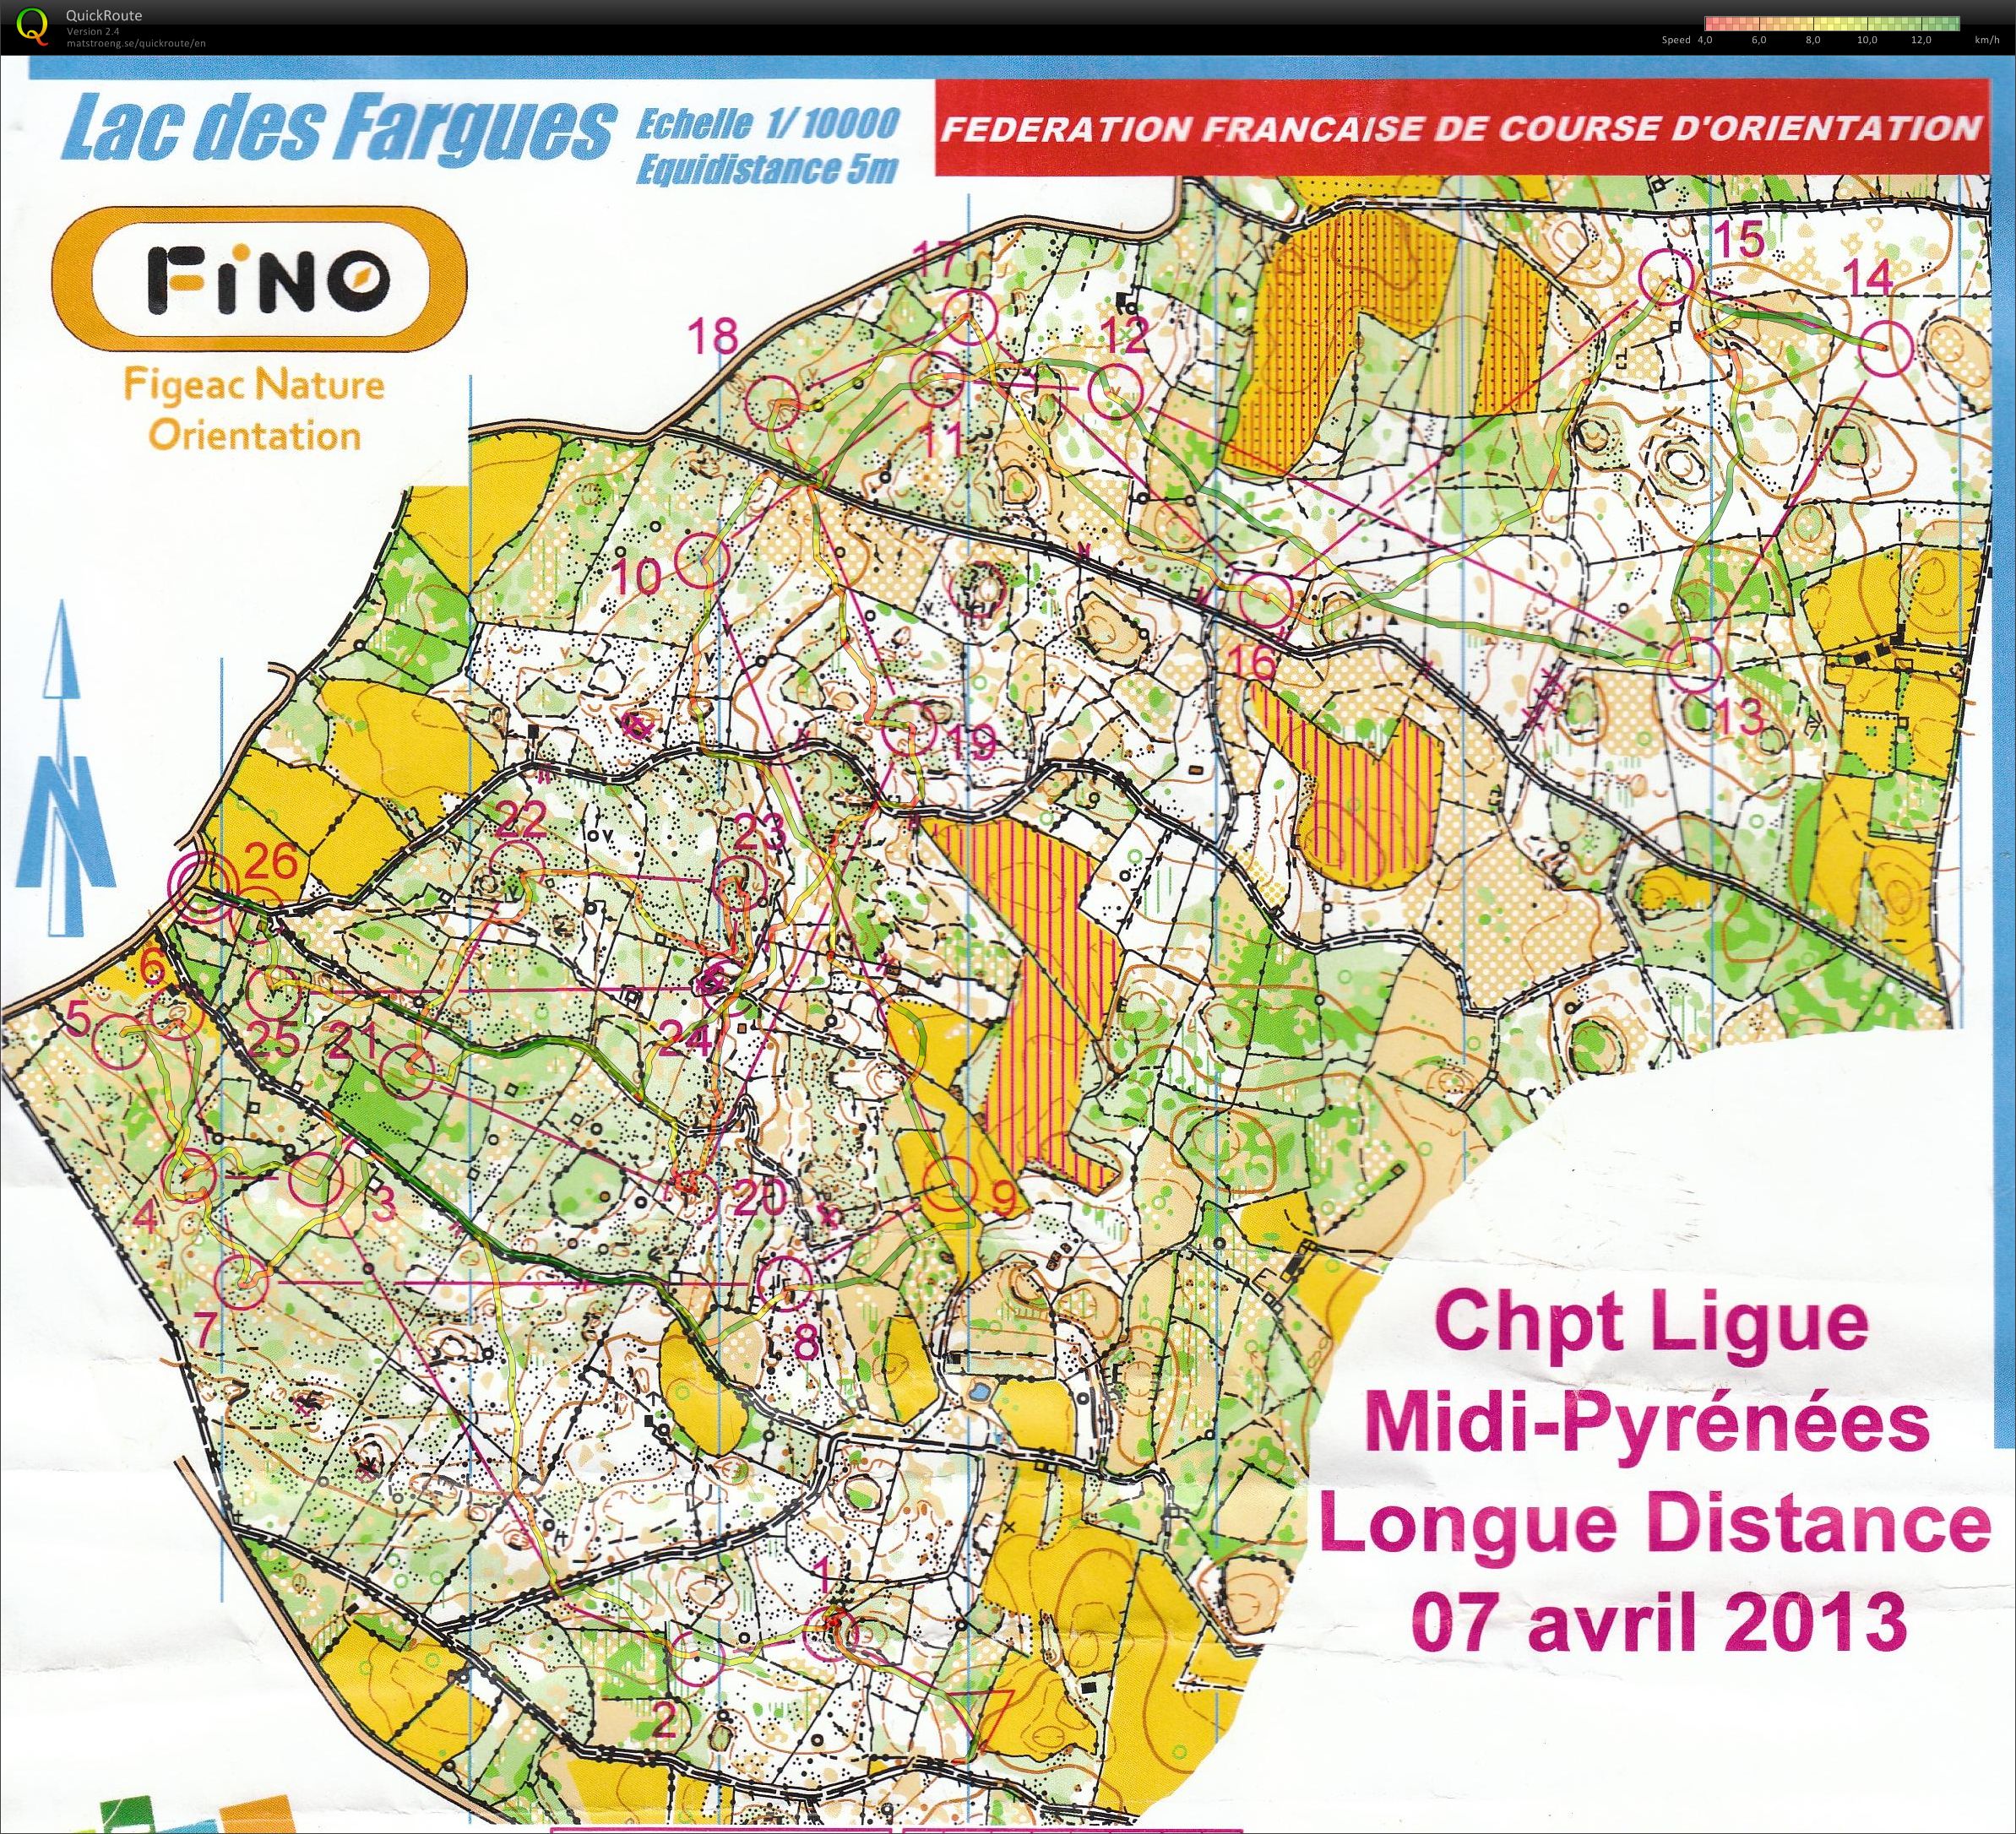 Championnat Régional LD Midi-Pyrénées (07.04.2013)